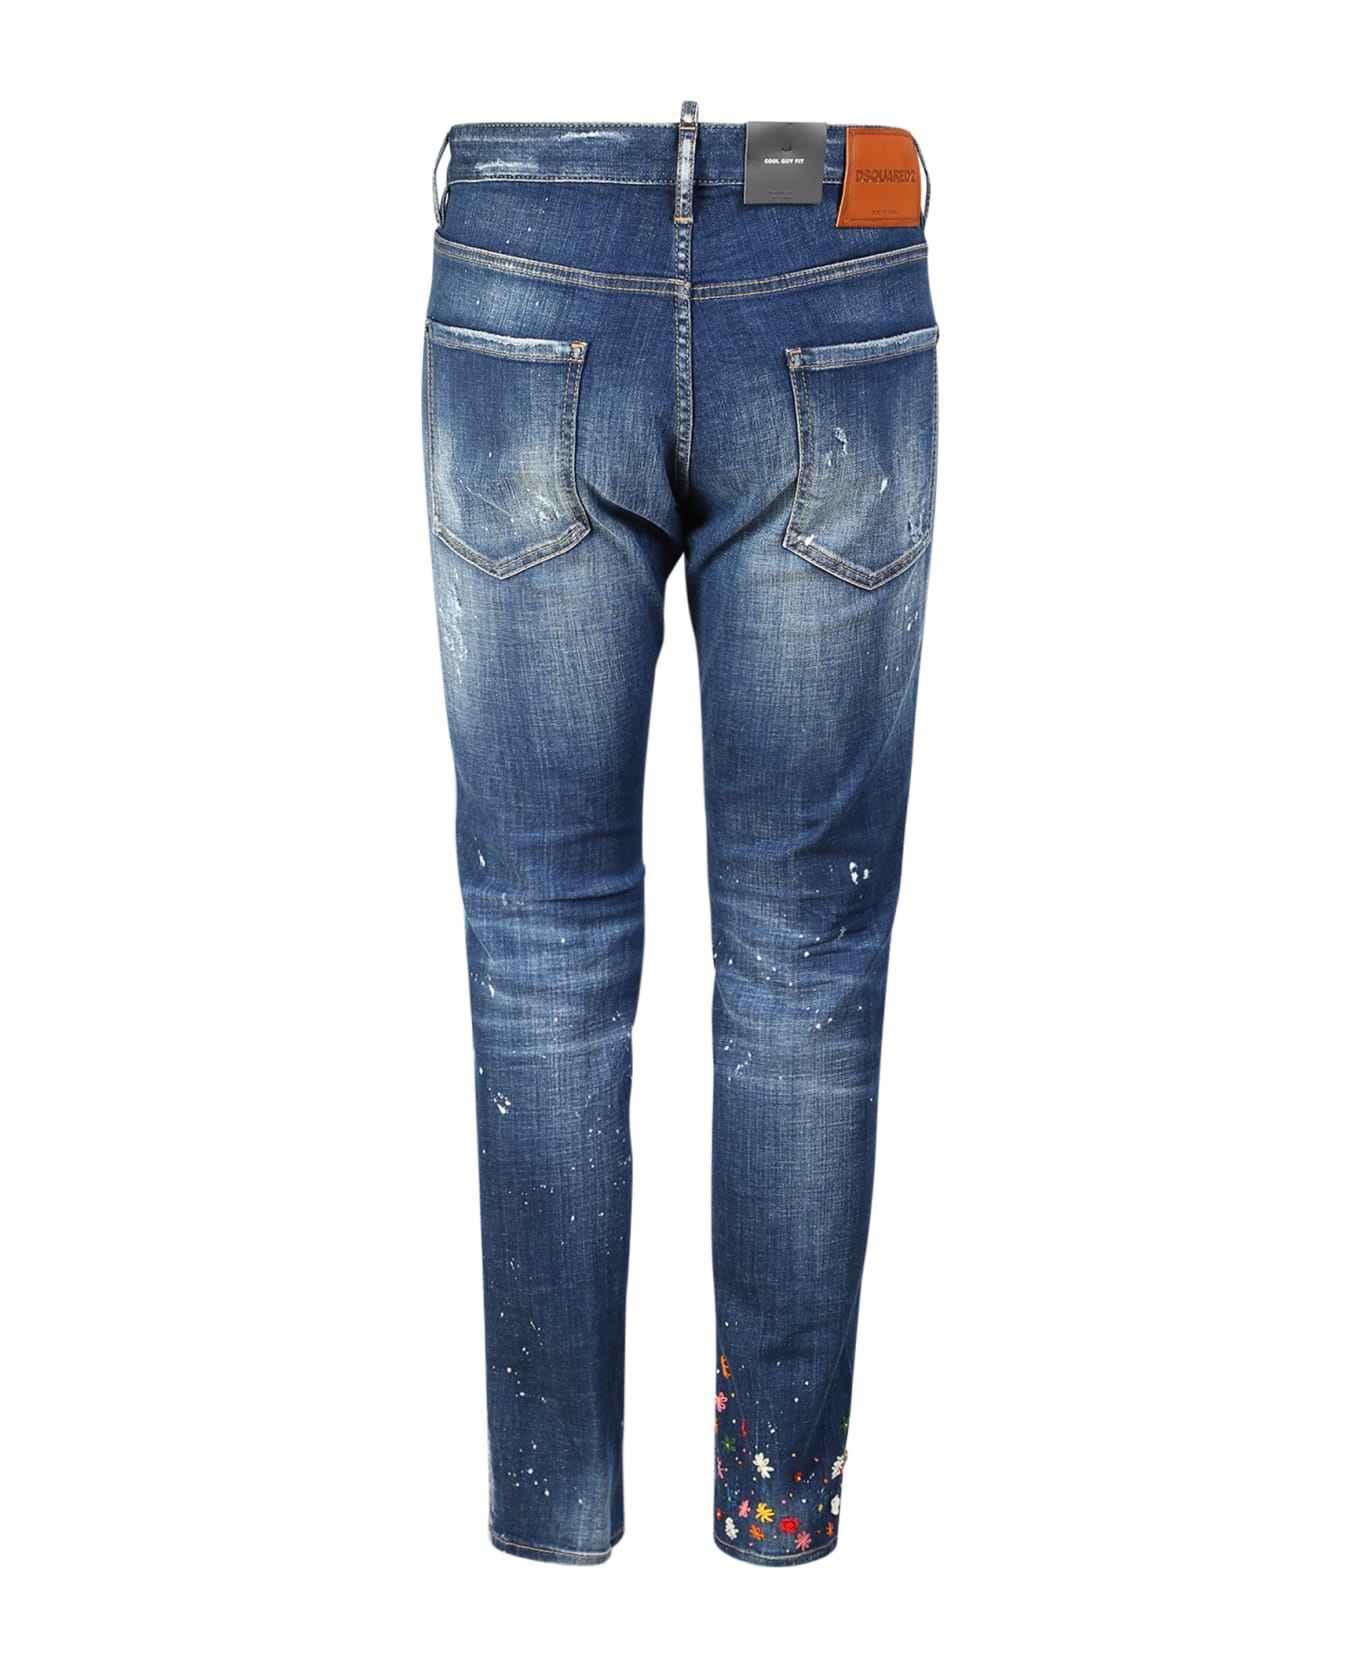 Ditsy Jeans By Dsquared2; Denim Garment Par Excellence Of The Maison - 2